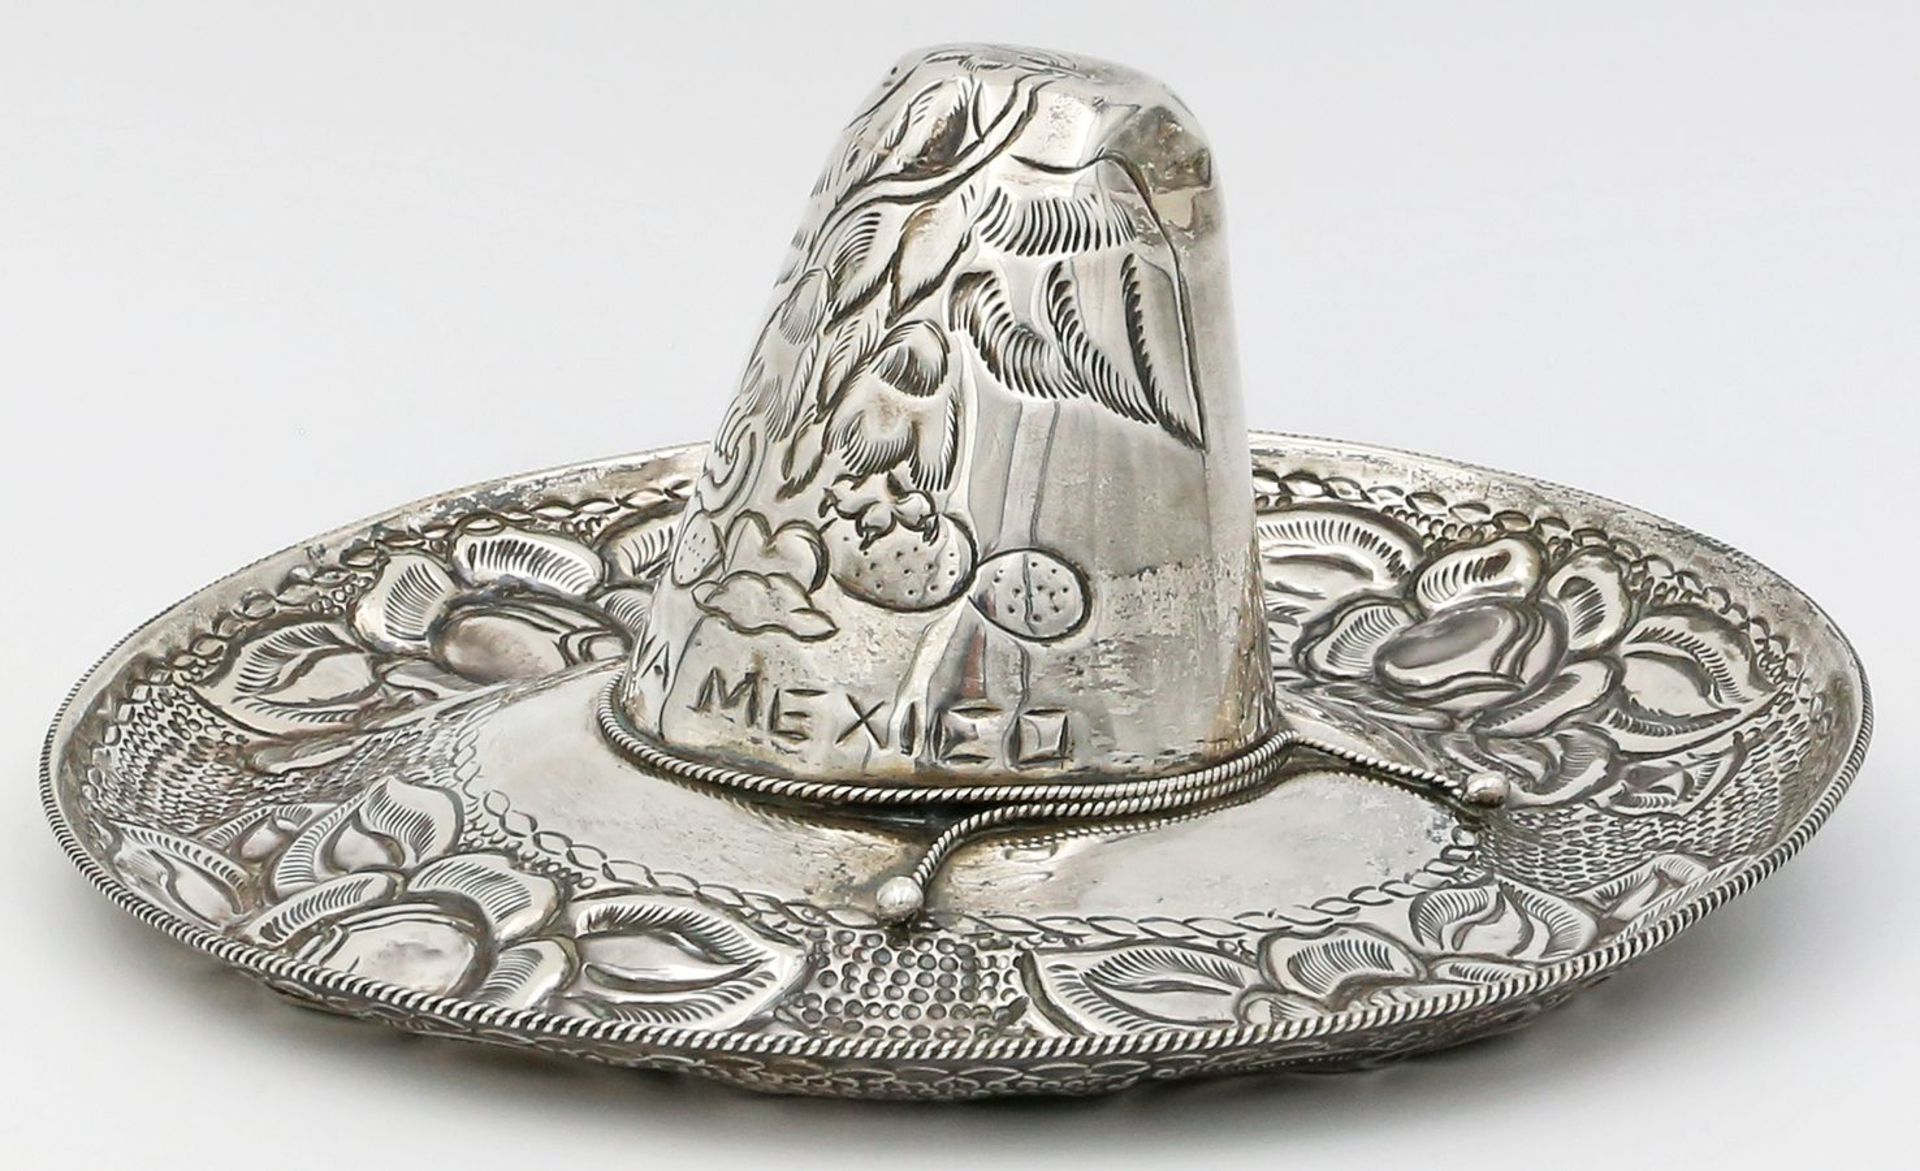 Mexikanischer Sombrero.